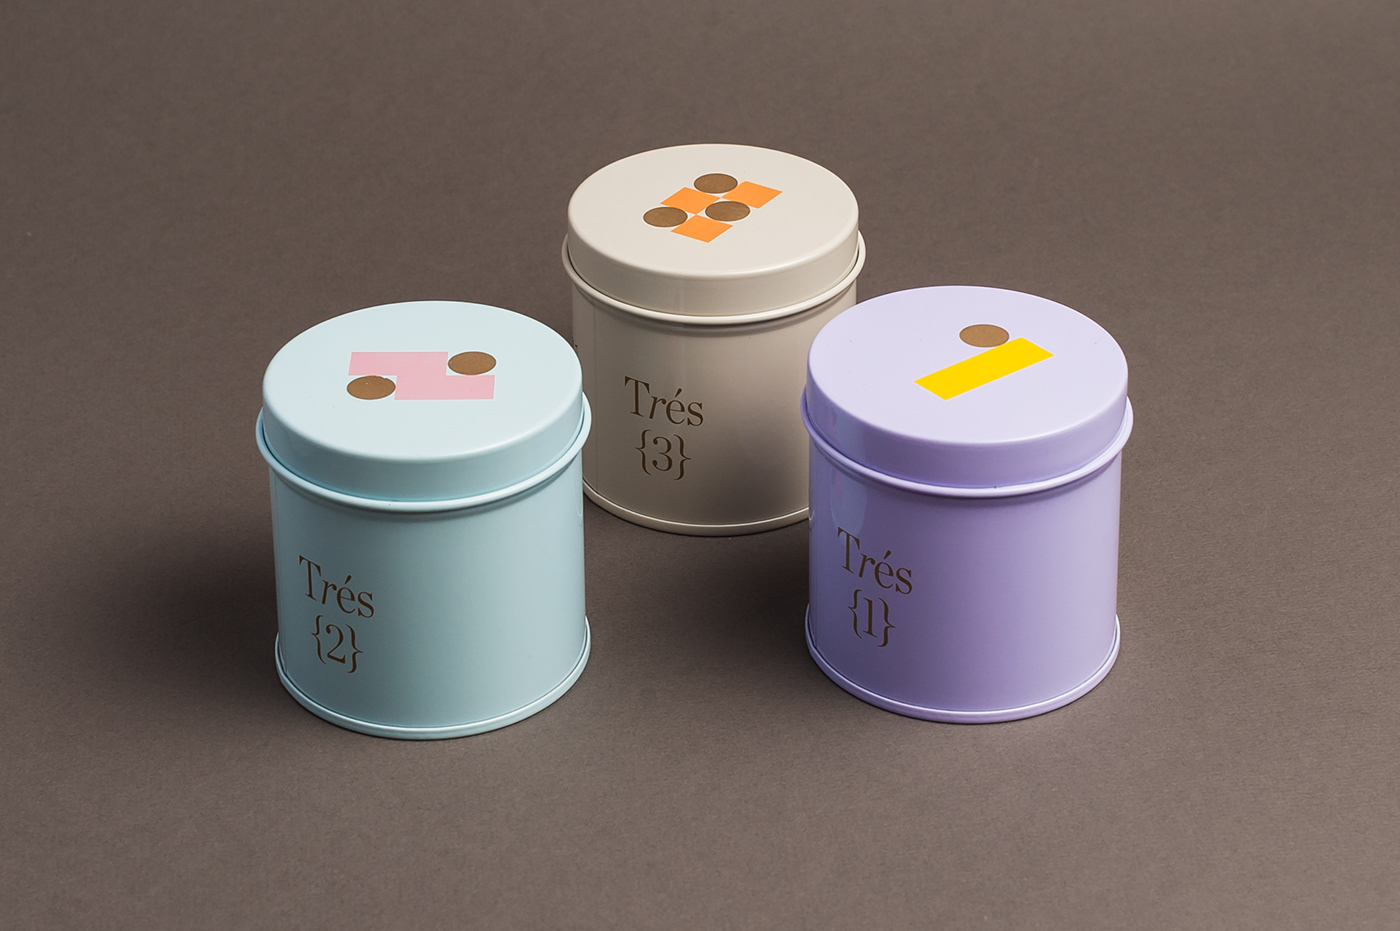 全新的视觉体验茶叶产品包装设计作品，Tres茶叶包装设计。